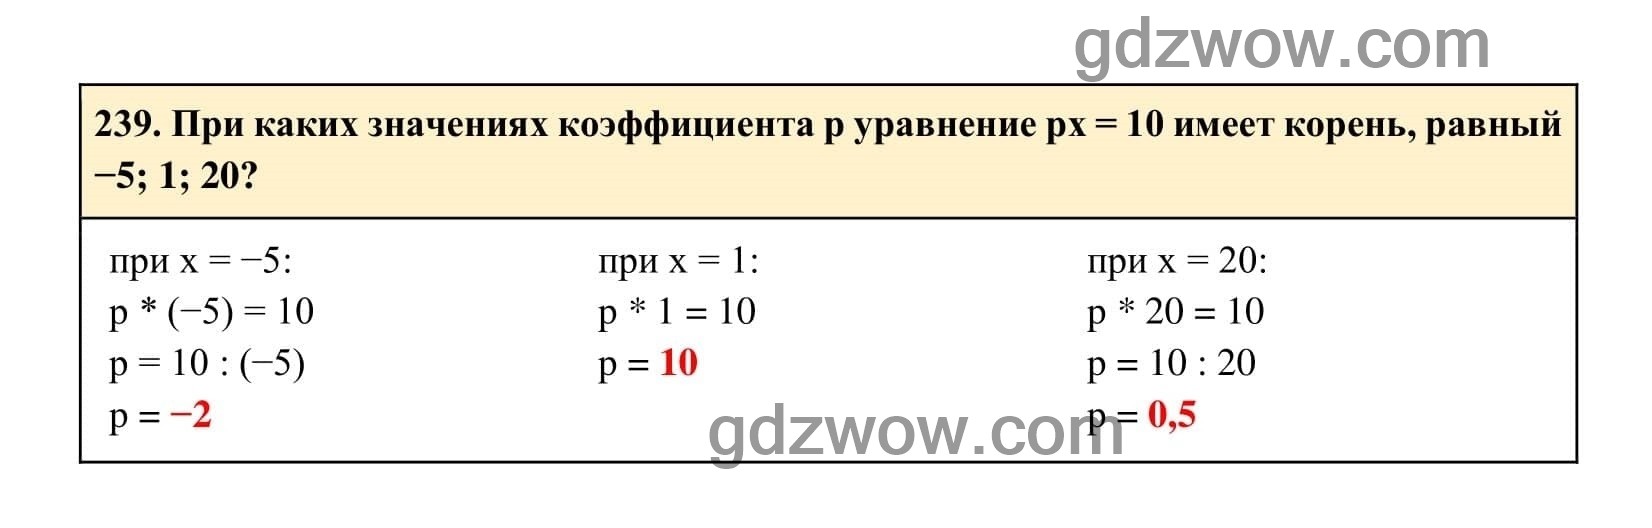 Упражнение 239 - ГДЗ по Алгебре 7 класс Учебник Макарычев (решебник) - GDZwow